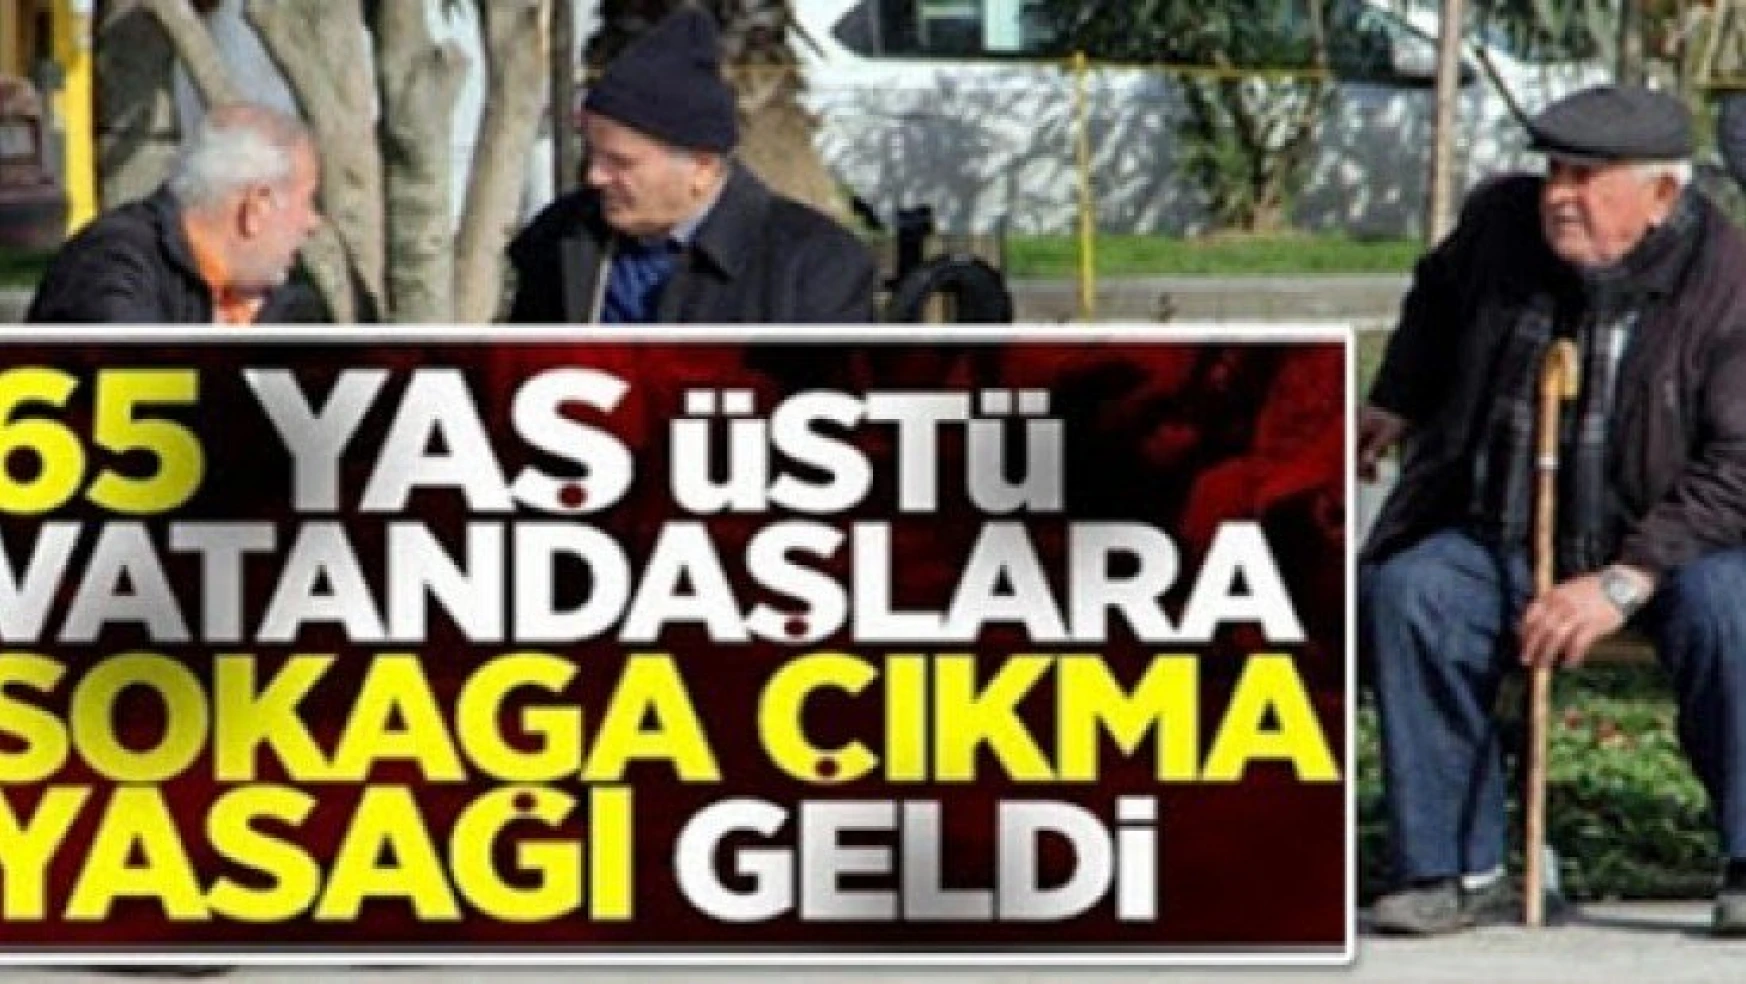 Ankara'da 65 yaş üstüne sokağa çıkma kısıtlaması